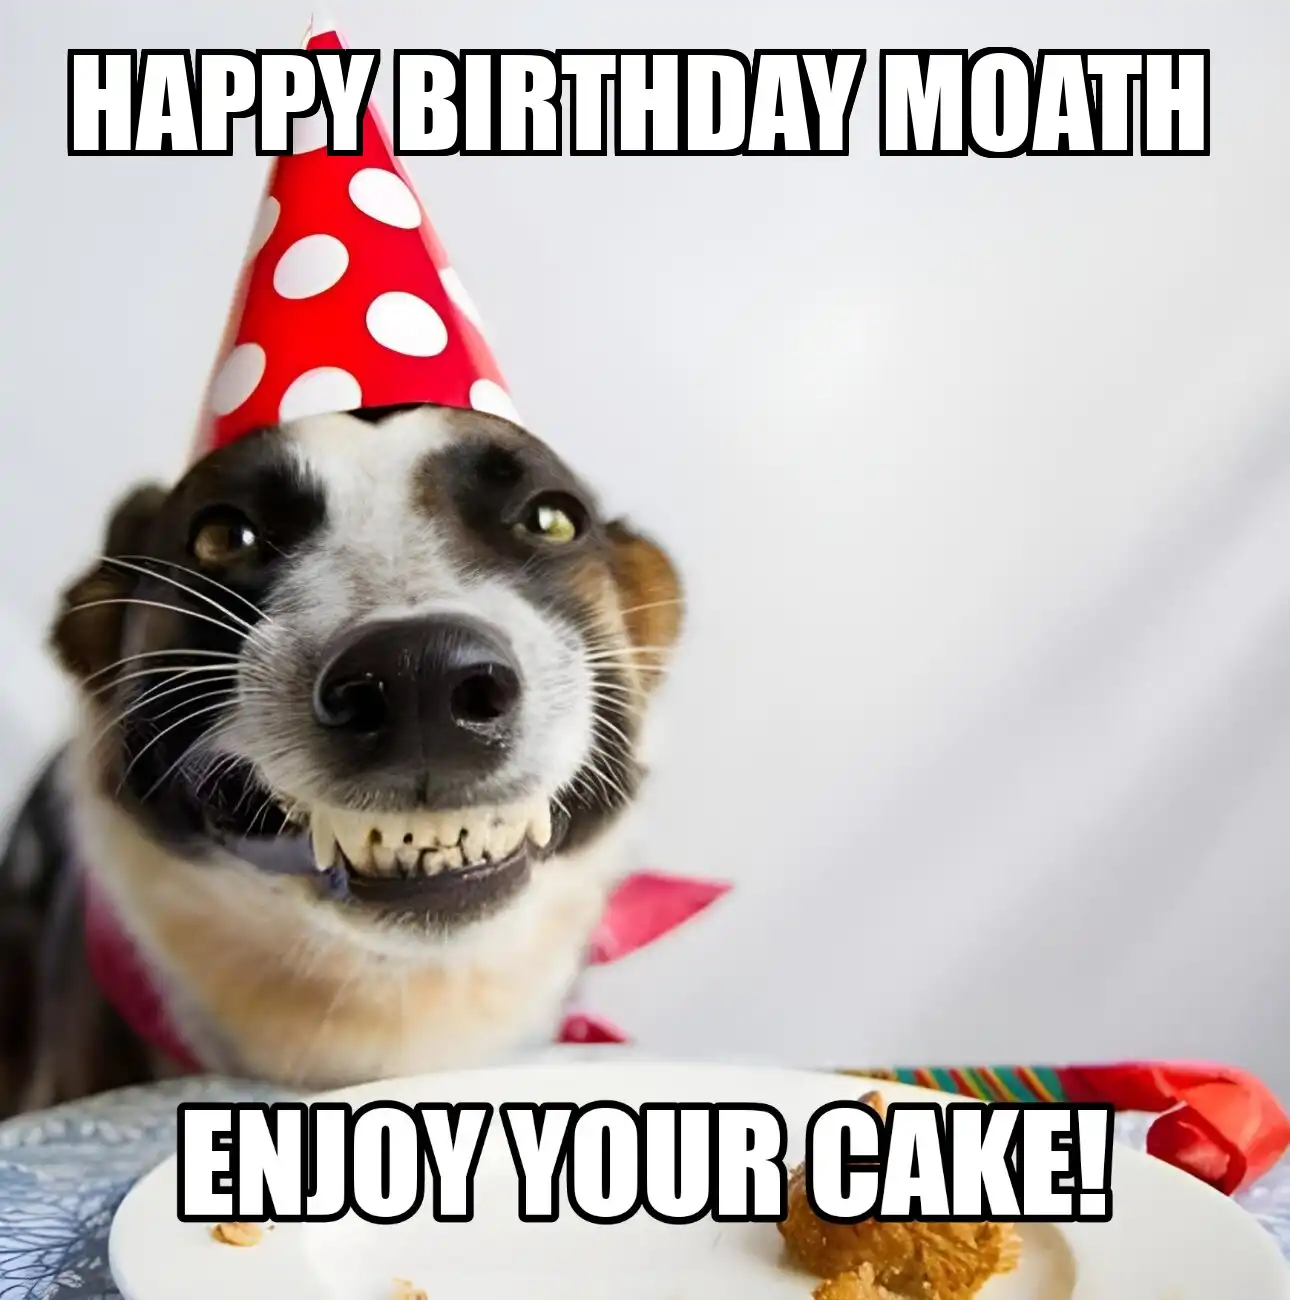 Happy Birthday Moath Enjoy Your Cake Dog Meme